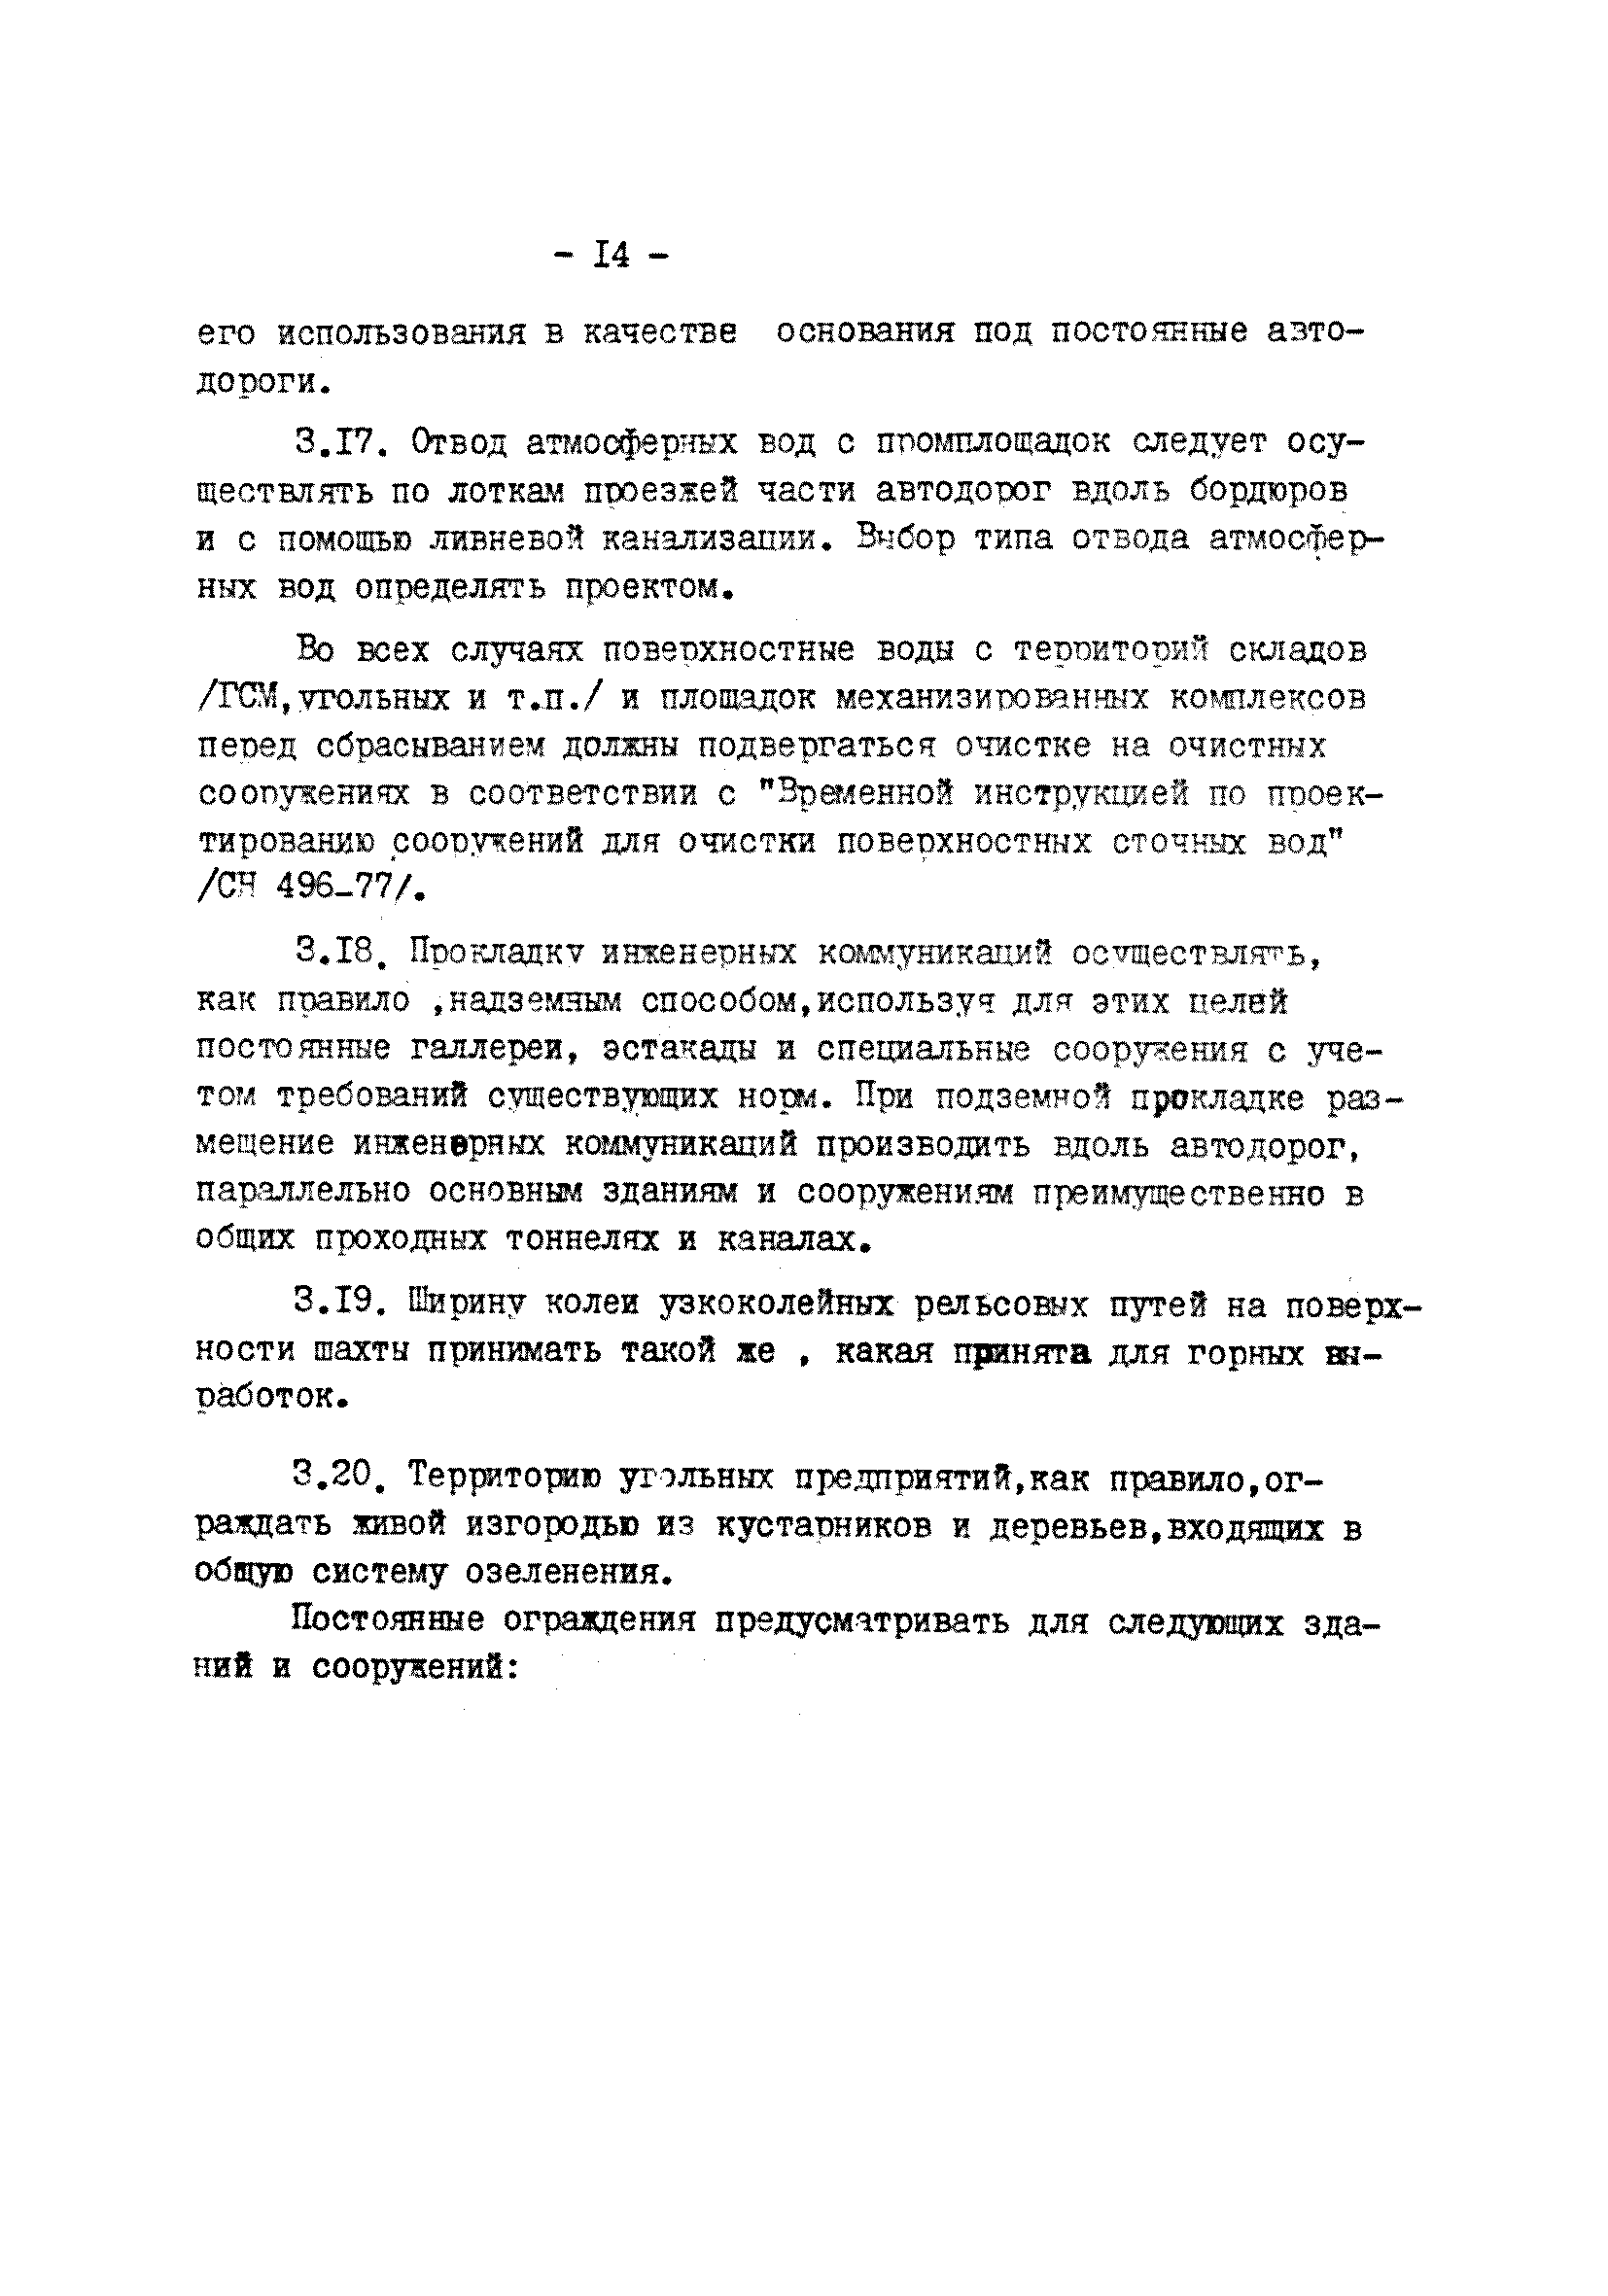 ВНТП 23-81